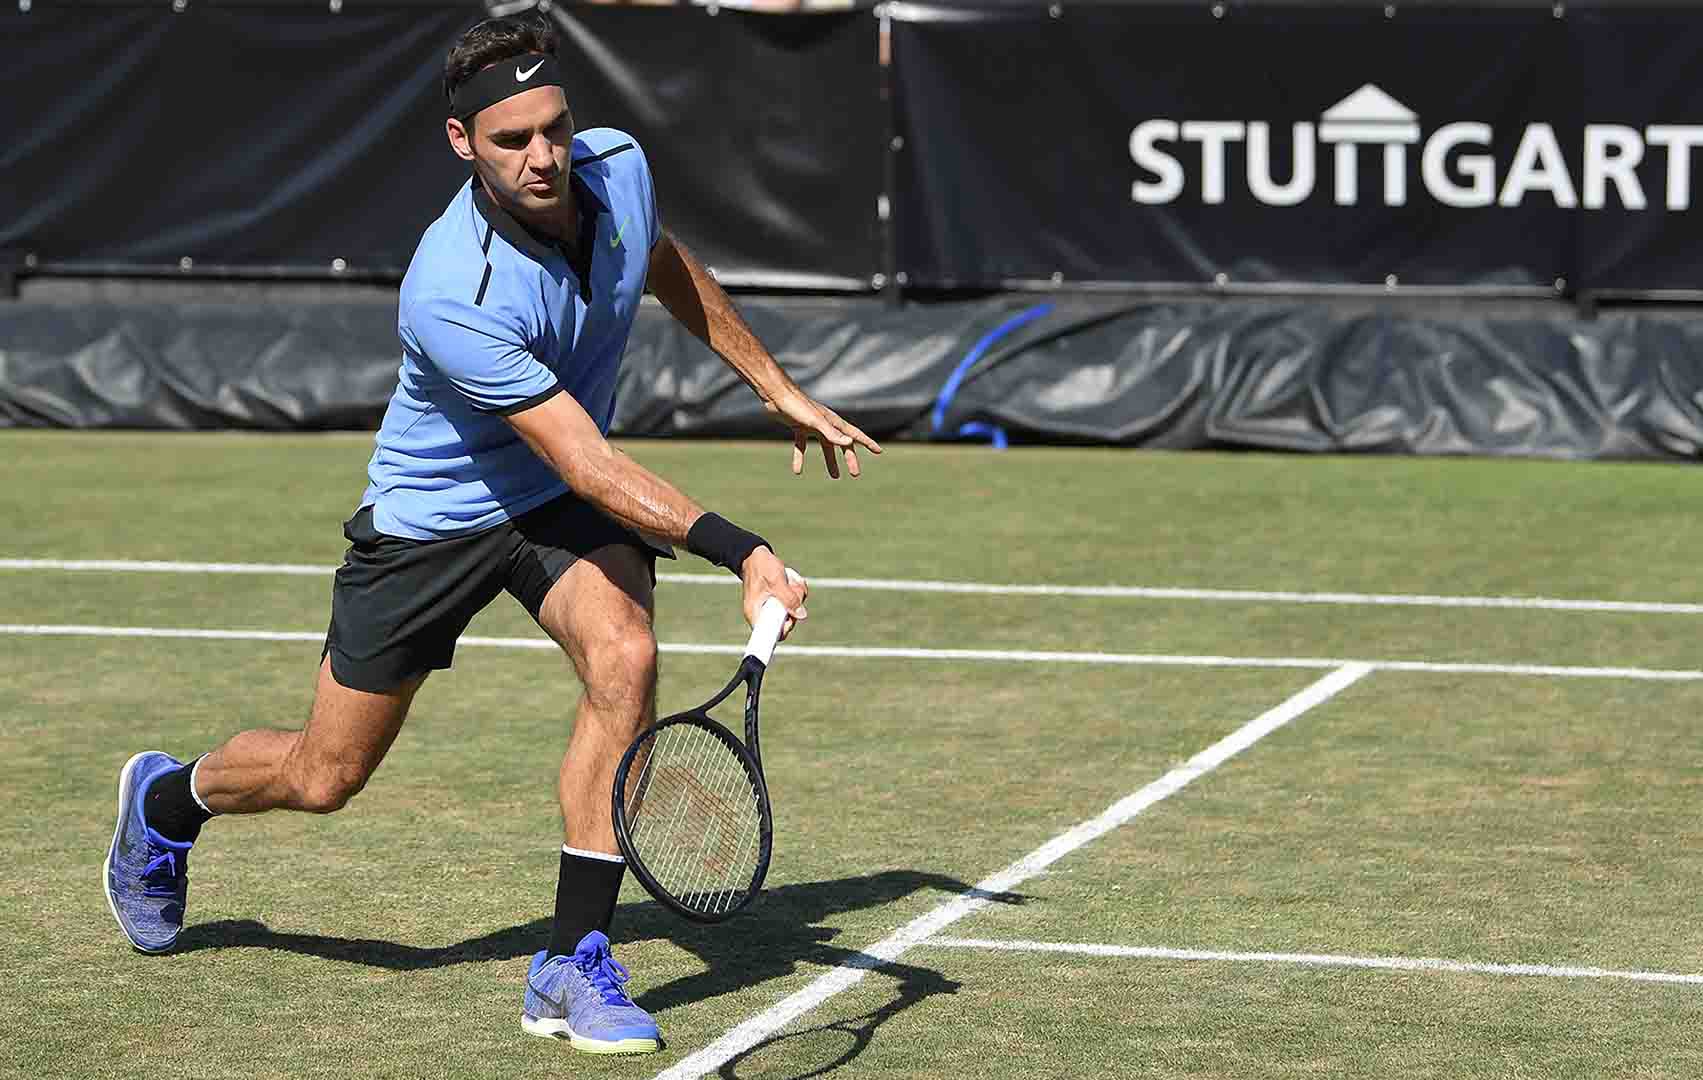 Време е за финал: Федерер излиза срещу Раонич за трофея в Щутгарт